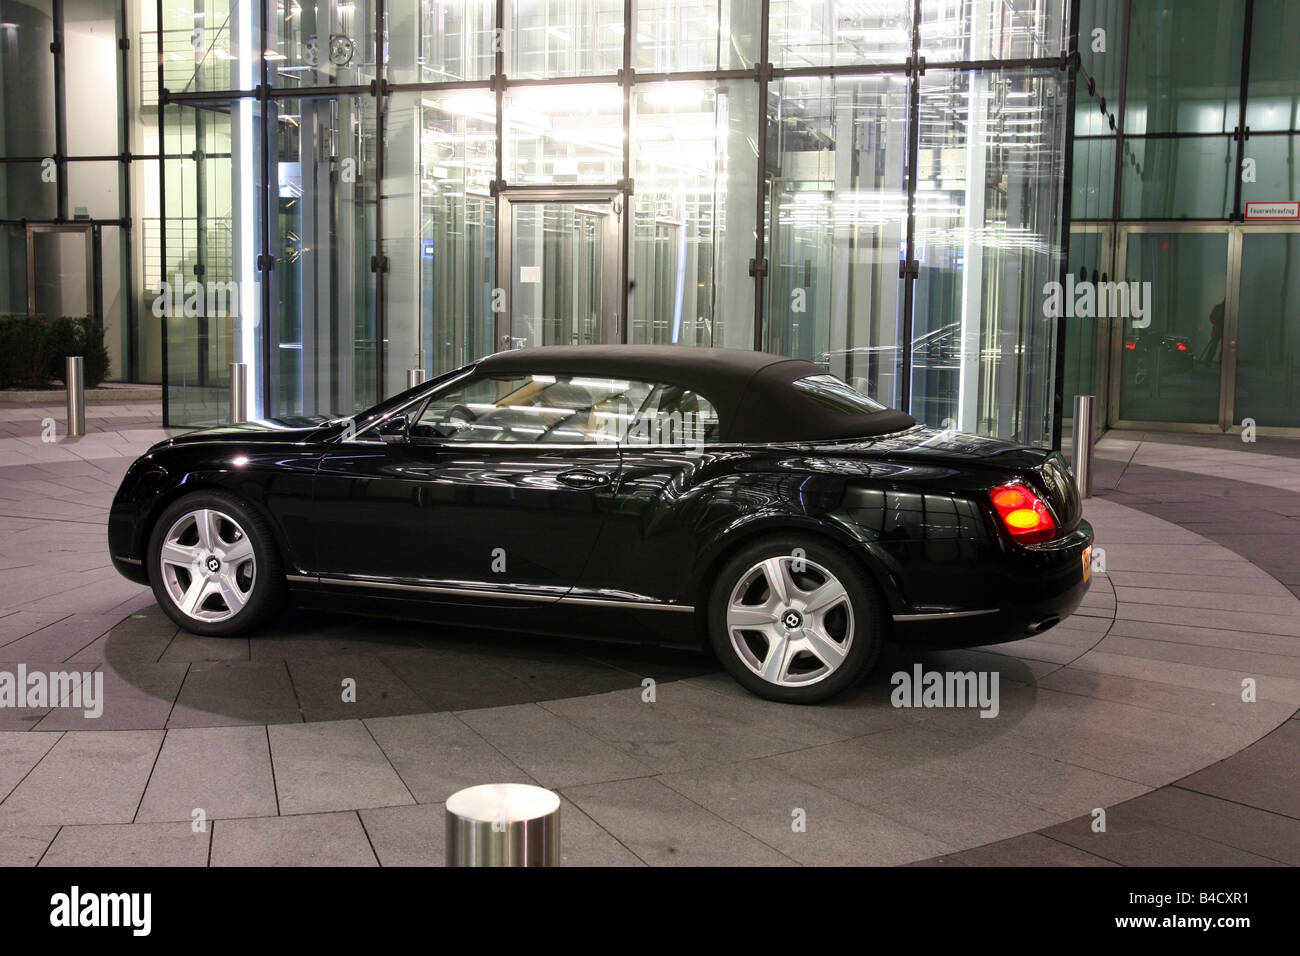 Bentley Continental GTC, Modell Jahr 2007-, schwarz, stehend,  Aufrechterhaltung, Seitenansicht, Stadt, oben geschlossen Stockfotografie -  Alamy